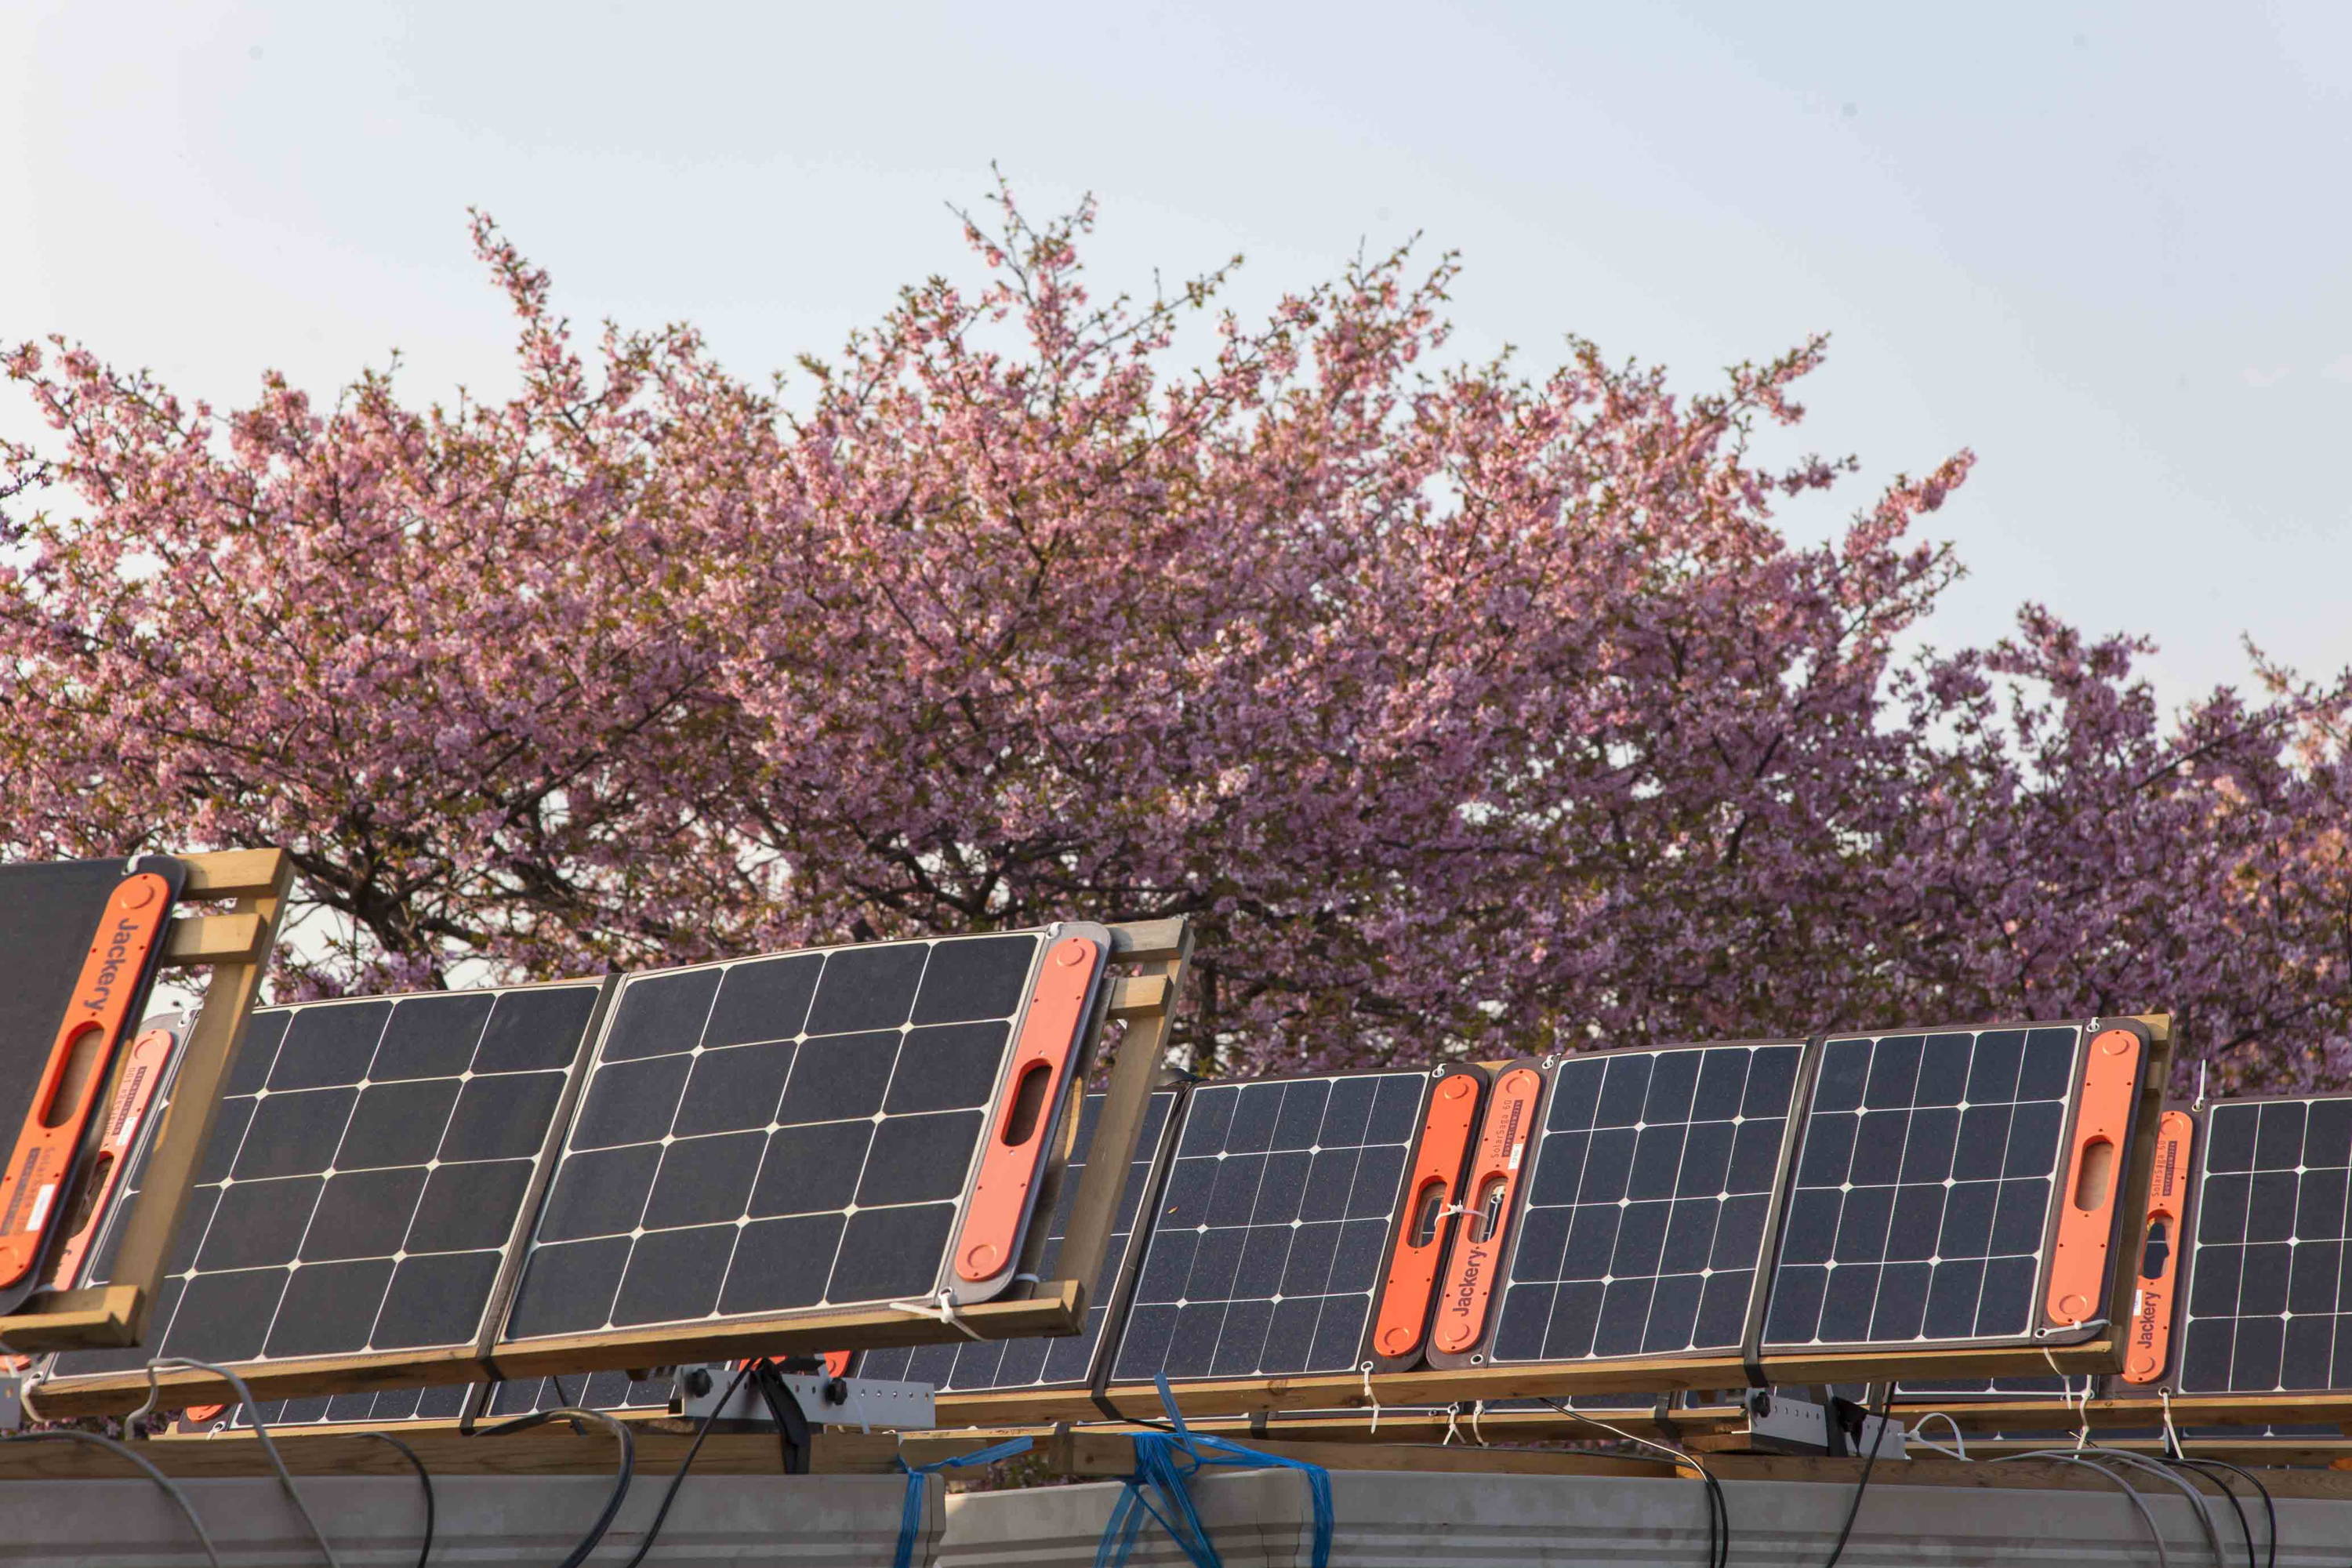 ポータブル電源とソーラーパネルで桜のエコライトアップを実現